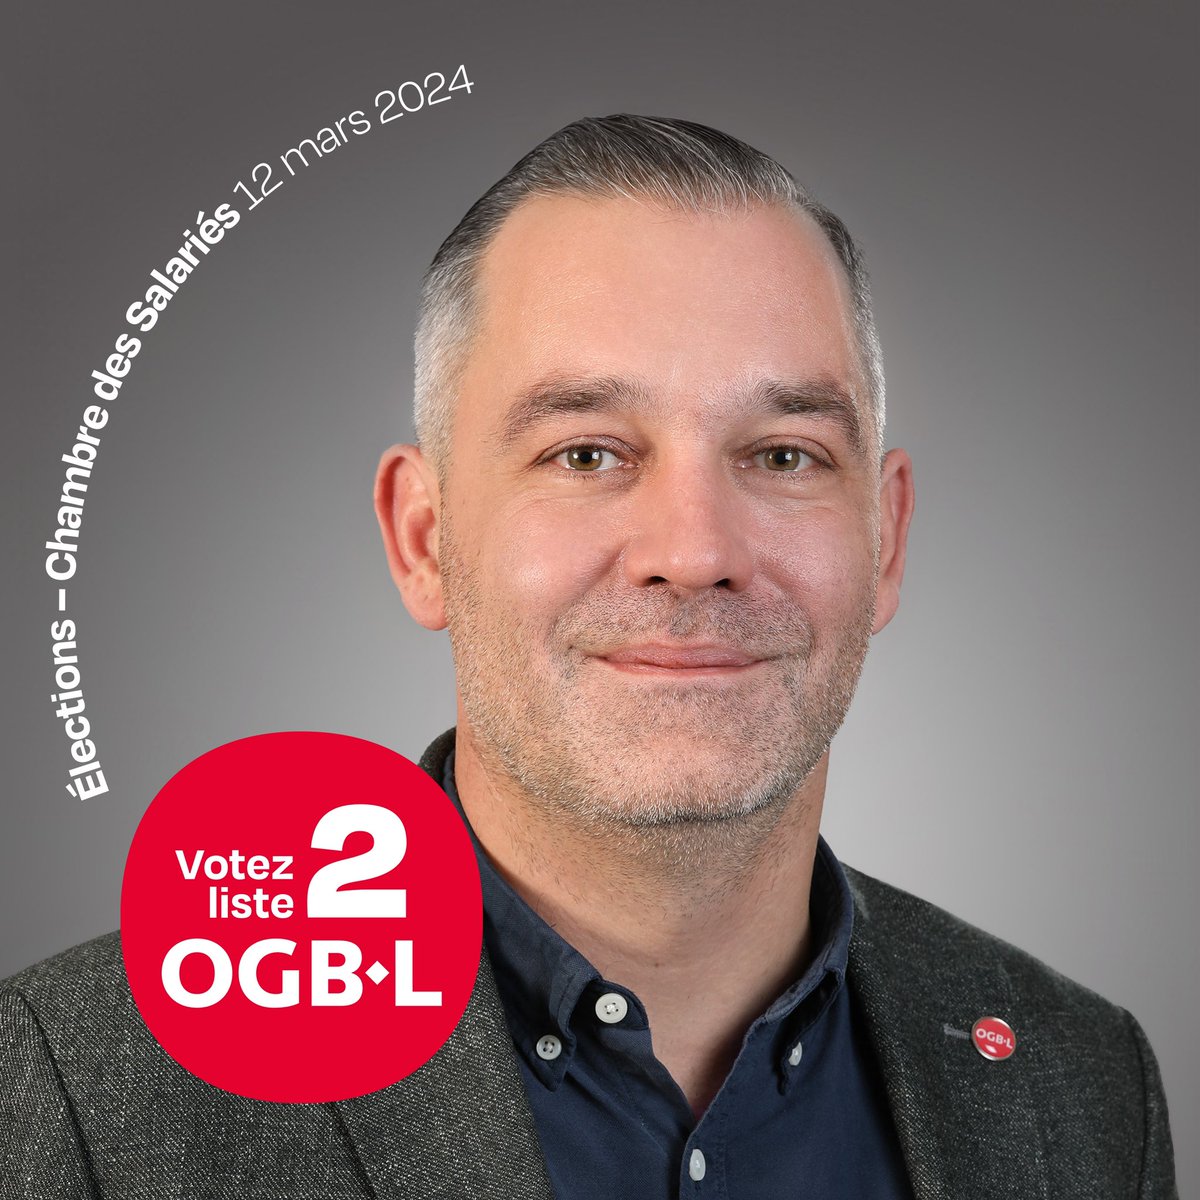 Votez OGBL 🔴 Liste 2 #électionssociales #luxembourg @CSL_Luxembourg #syndicats @OGBL_Luxembourg